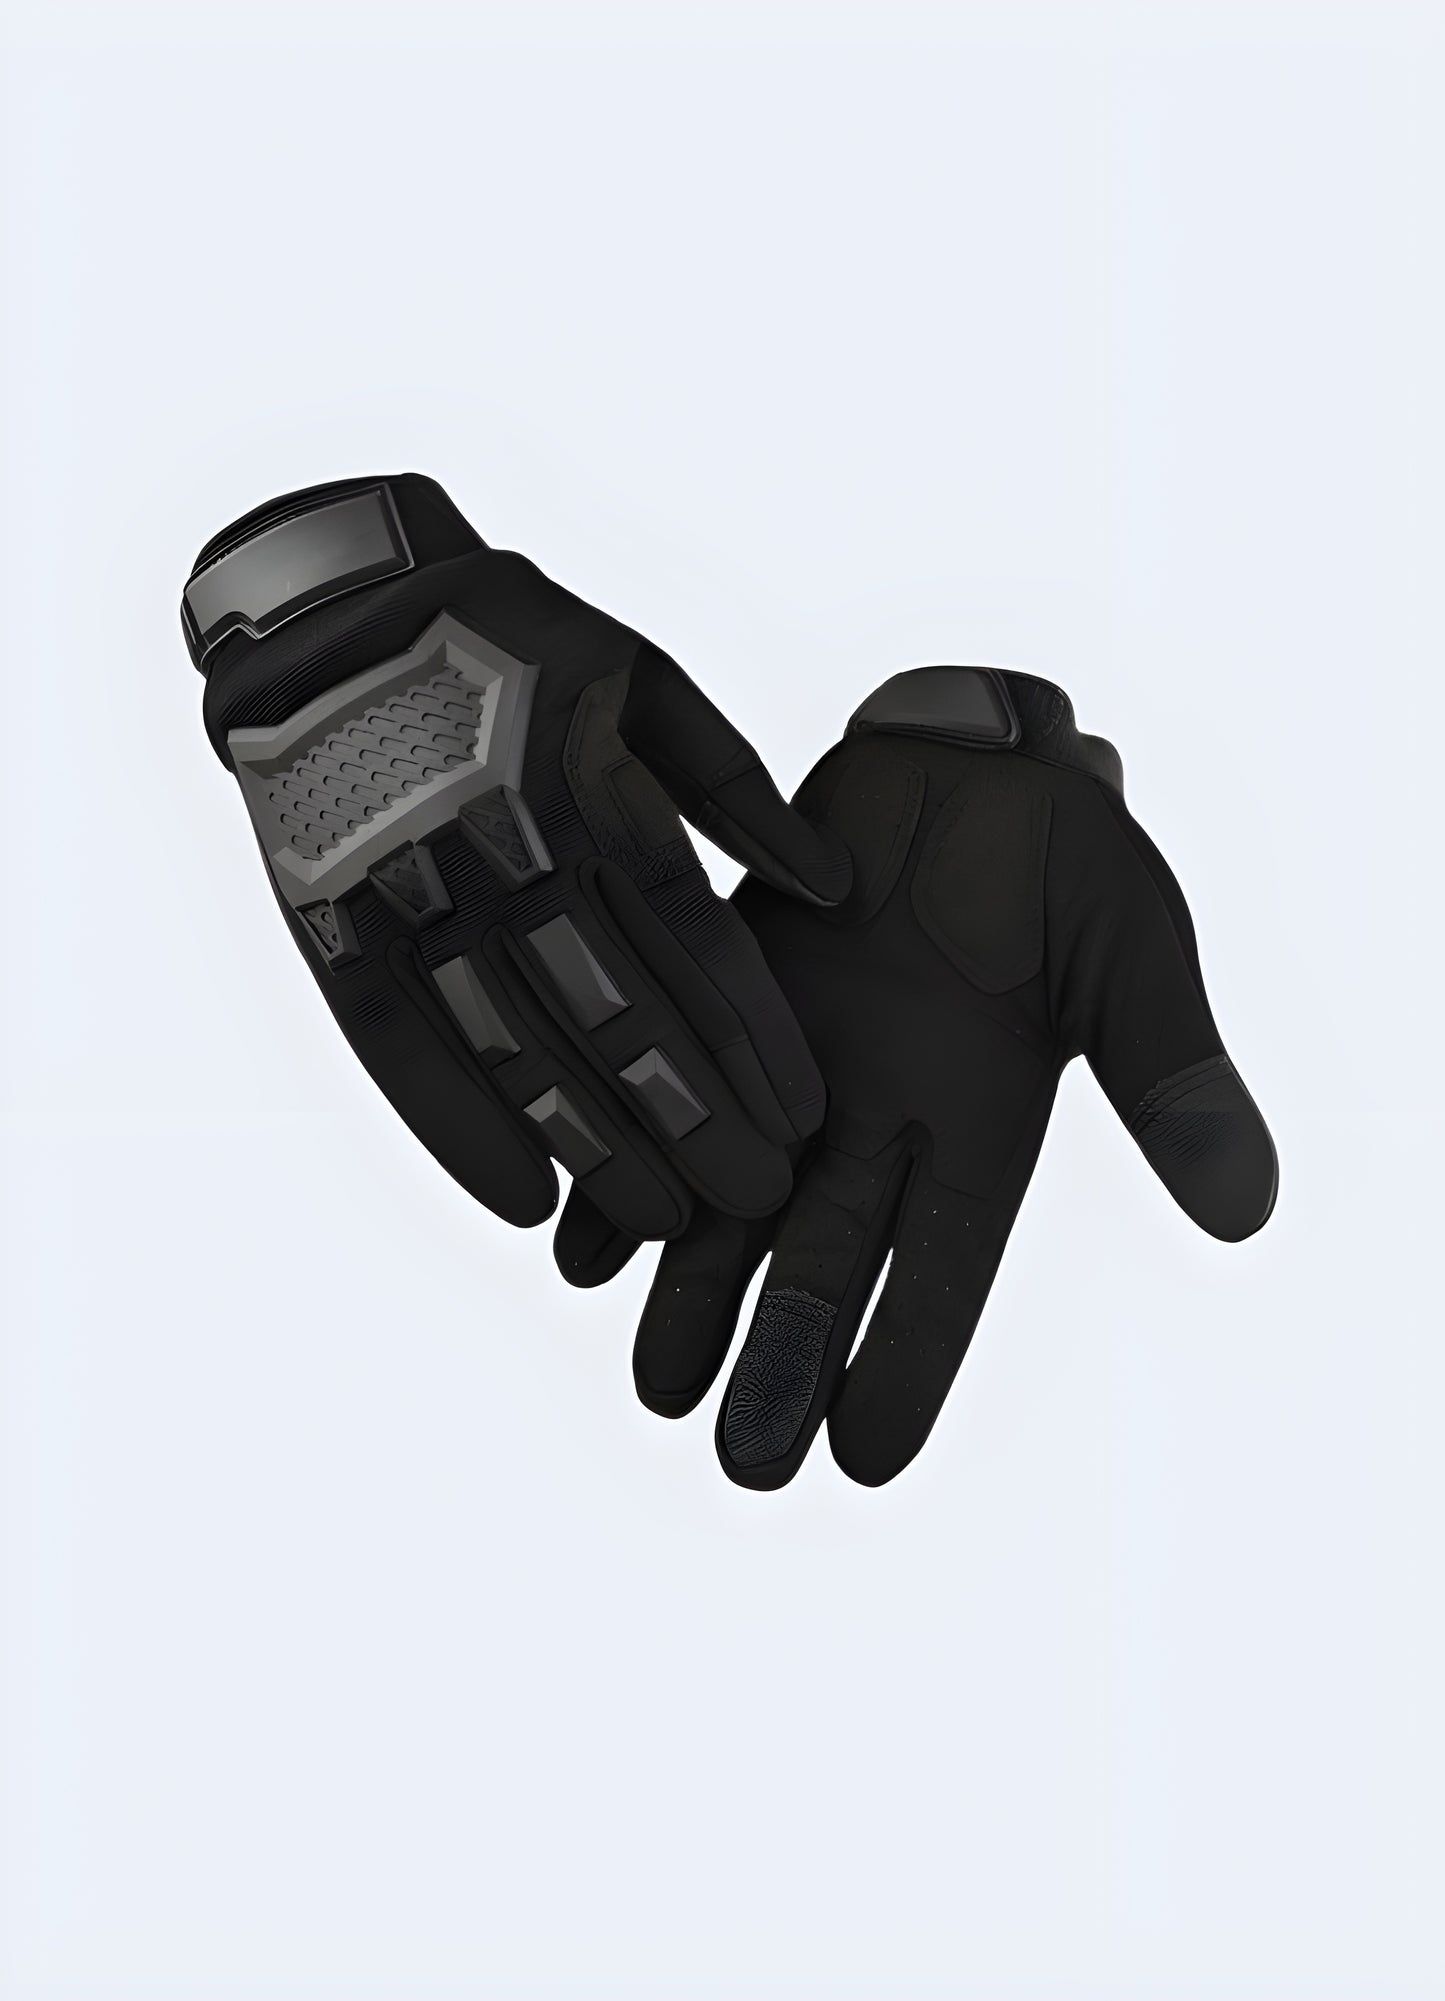 Inside view full finger techwear gloves black.